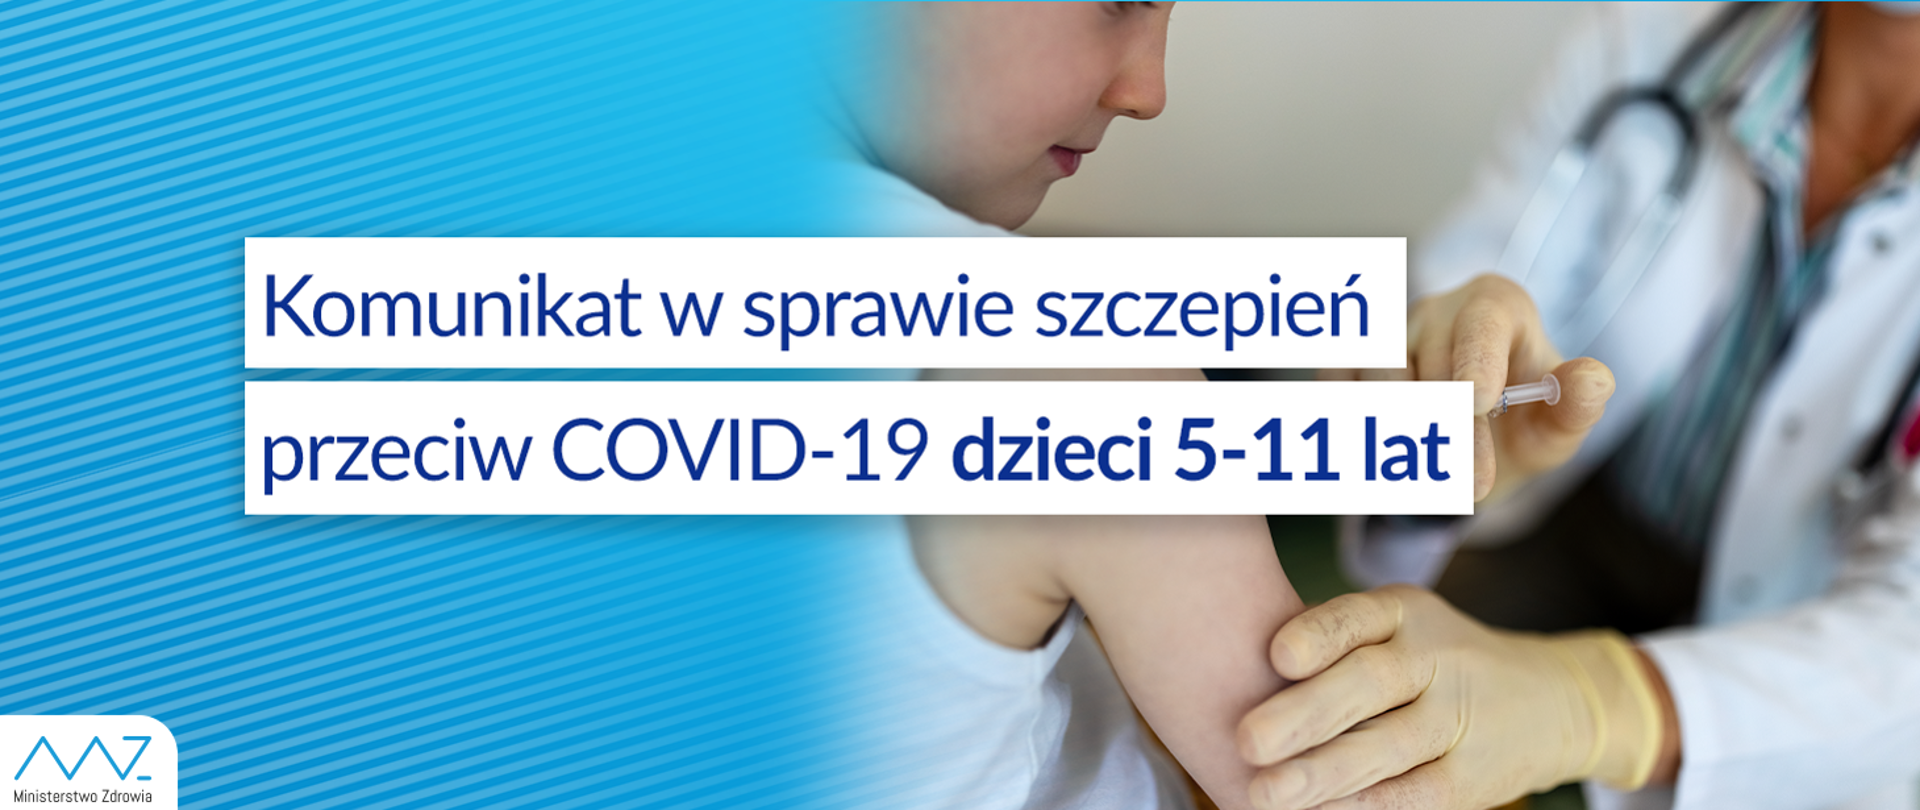 baner informacyjny o szczepieniach dzieci